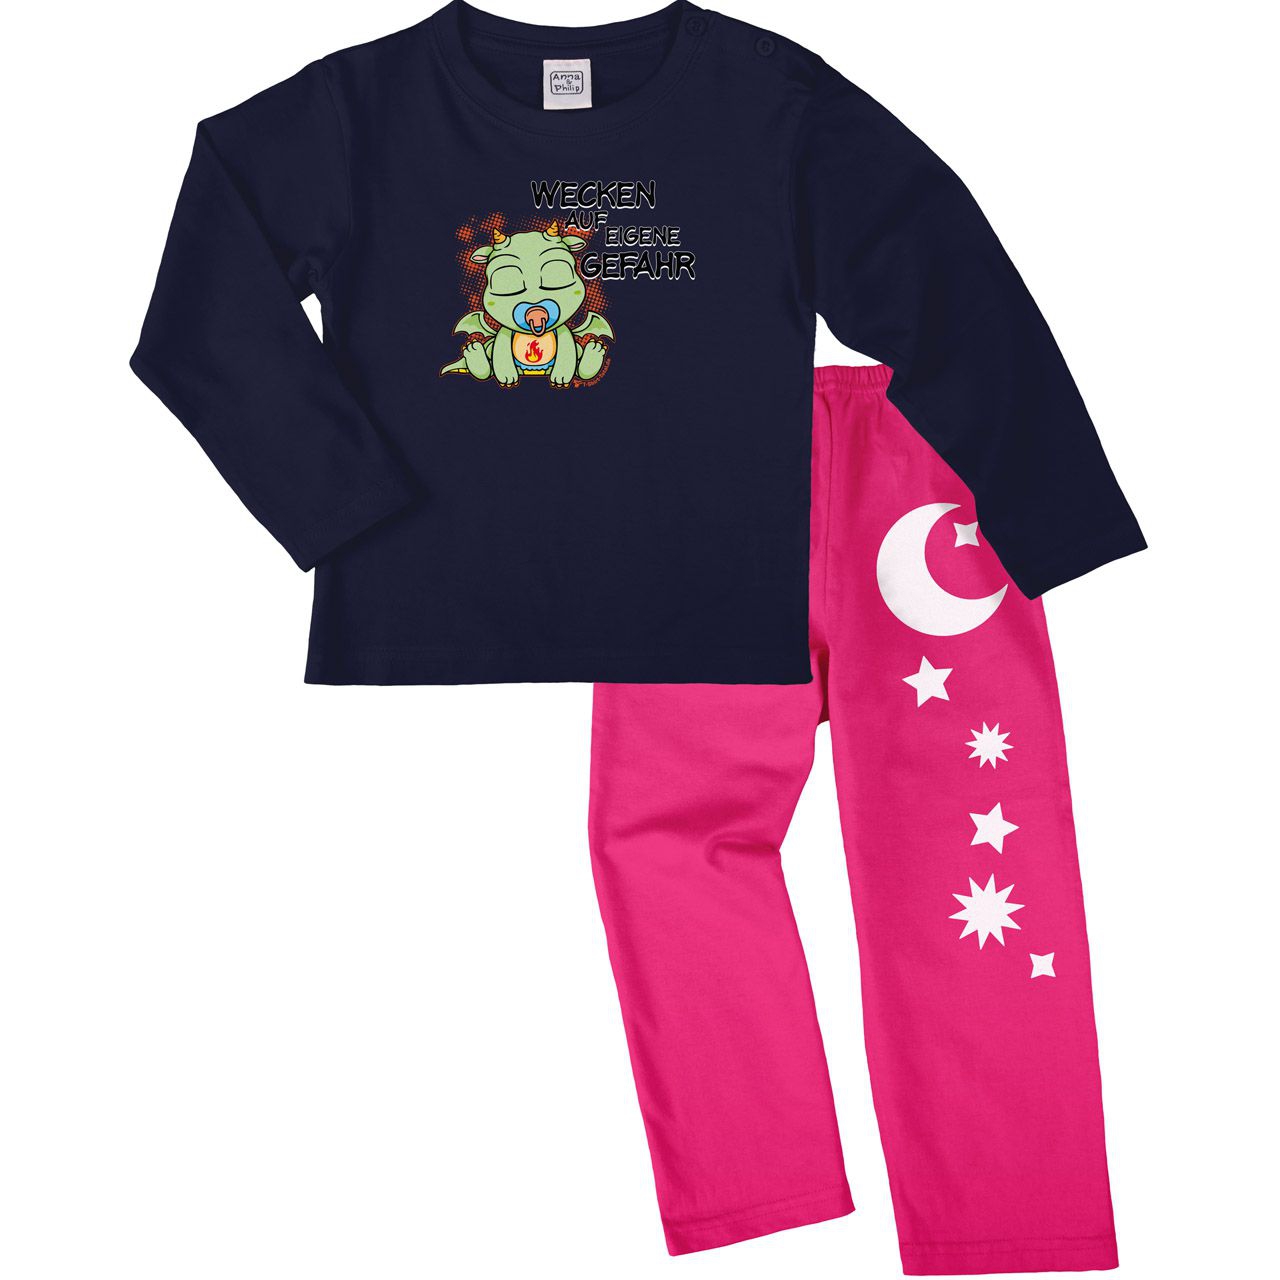 Drachen wecken Pyjama Set navy / pink 68 / 74